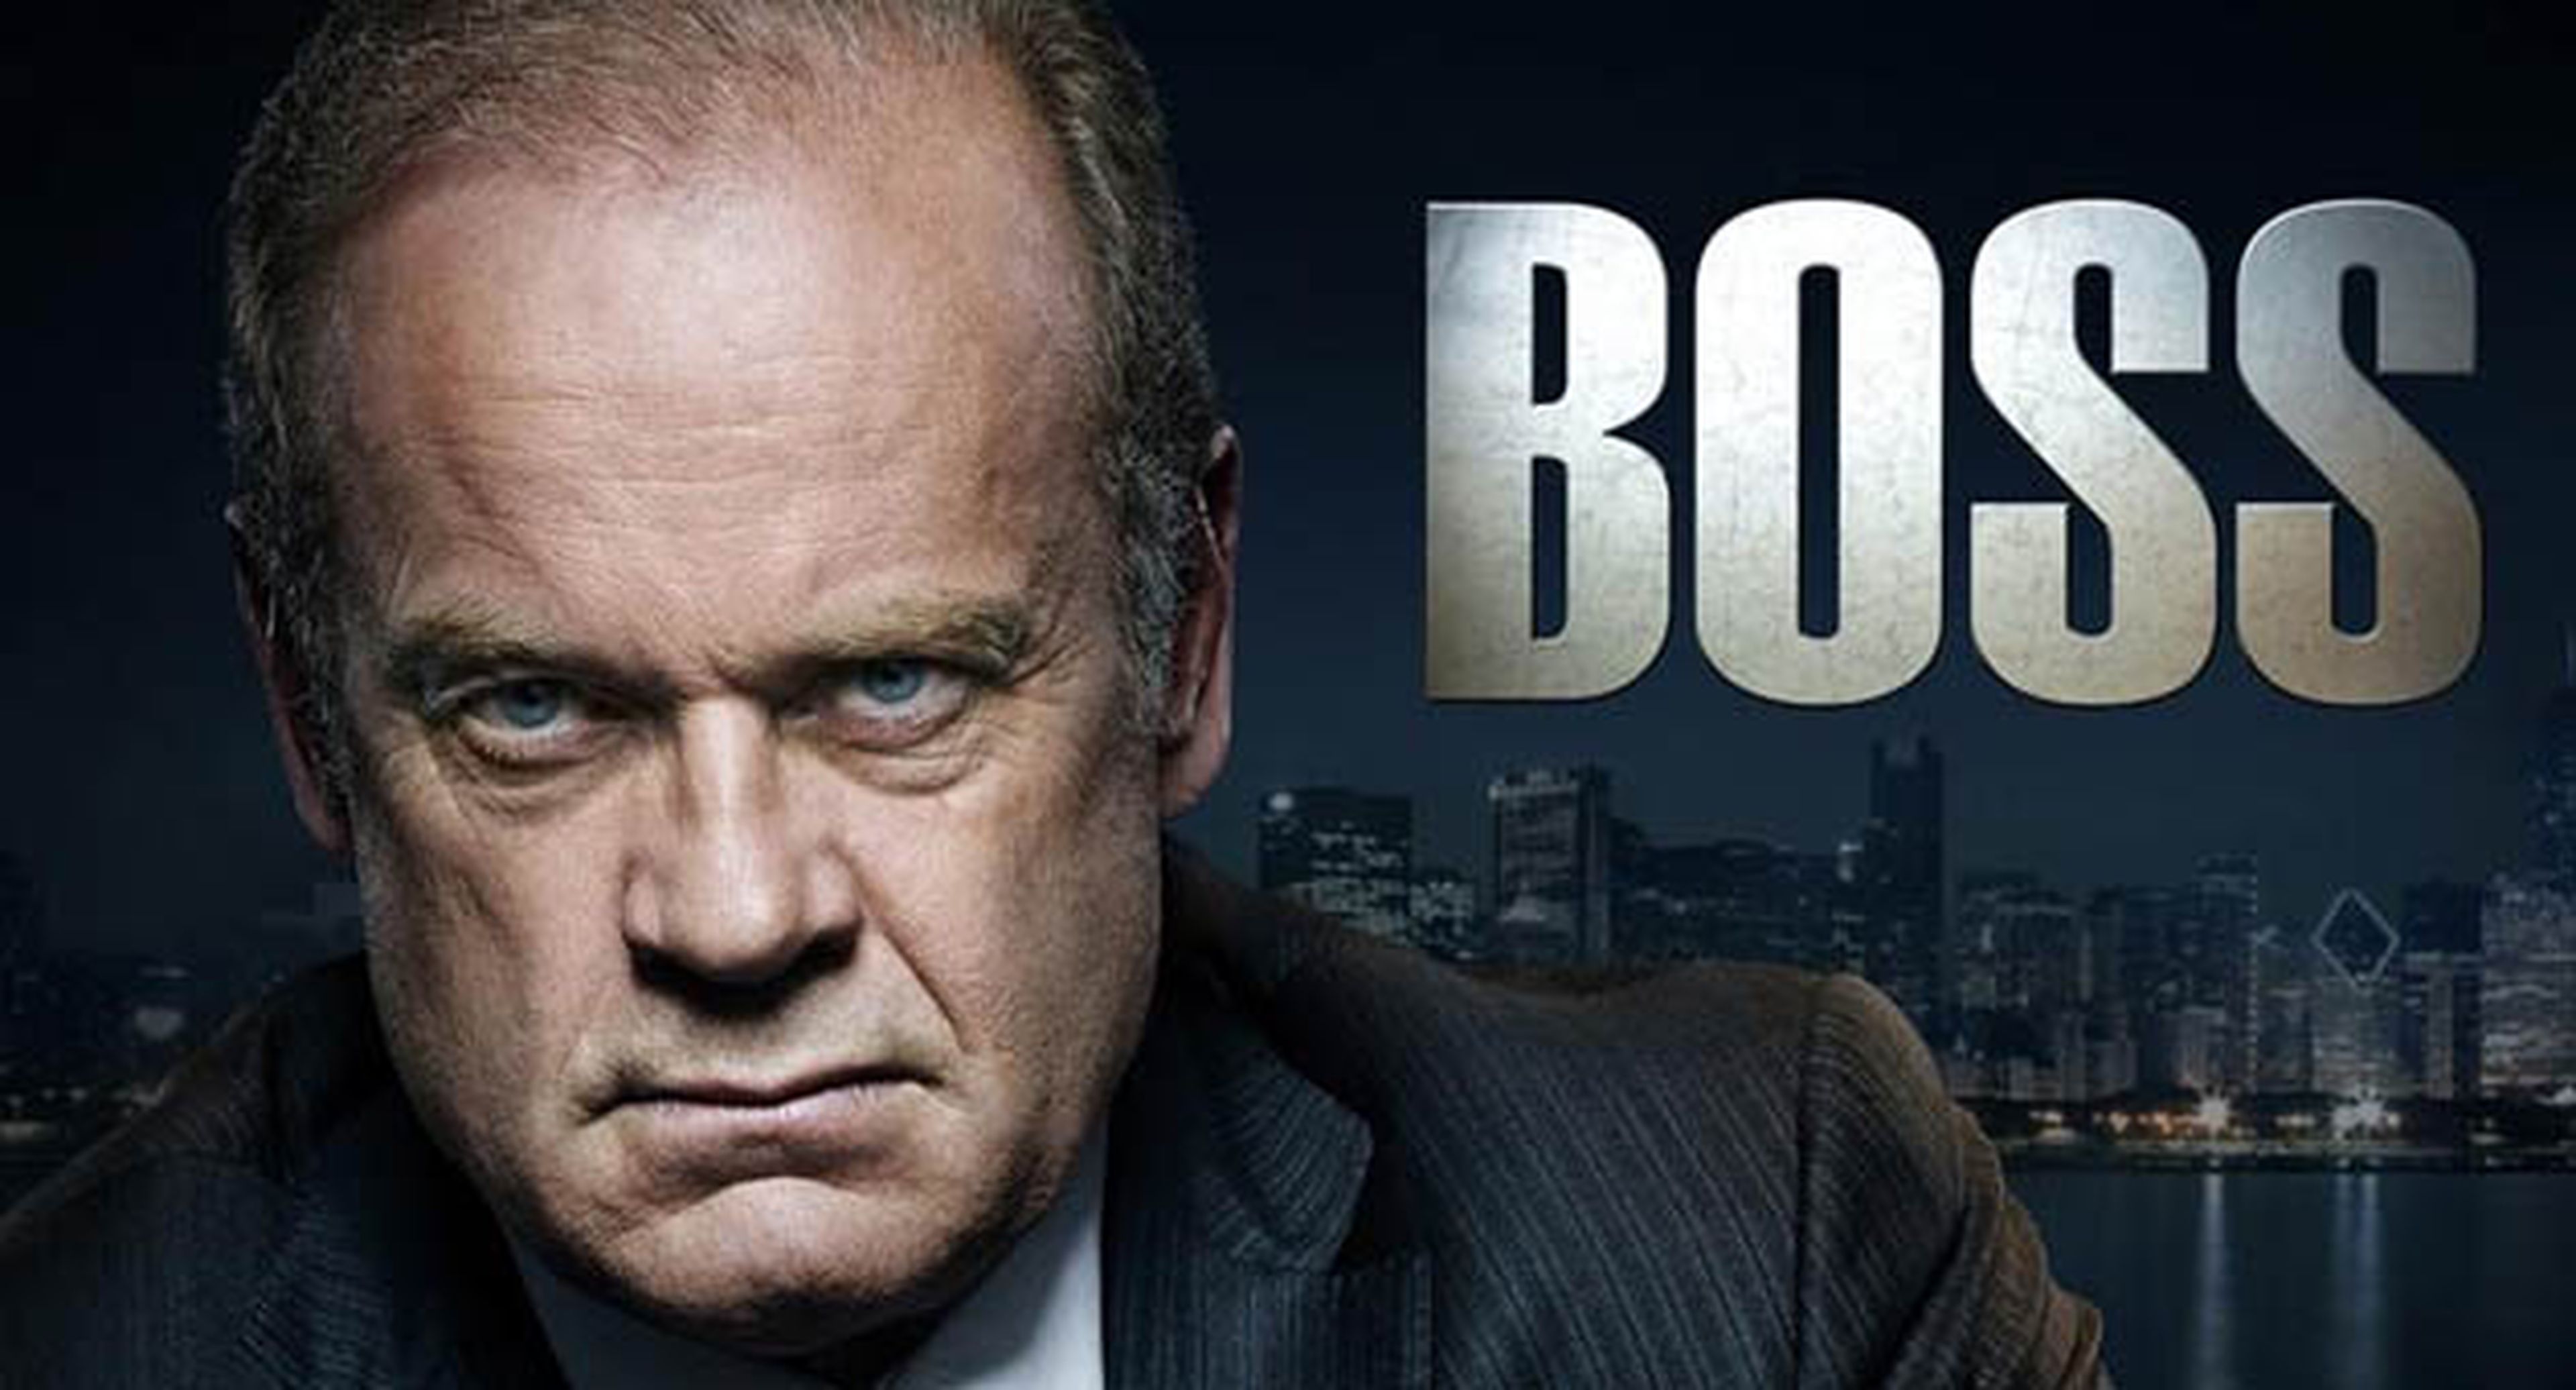 Boss llega a Canal + con excelentes críticas